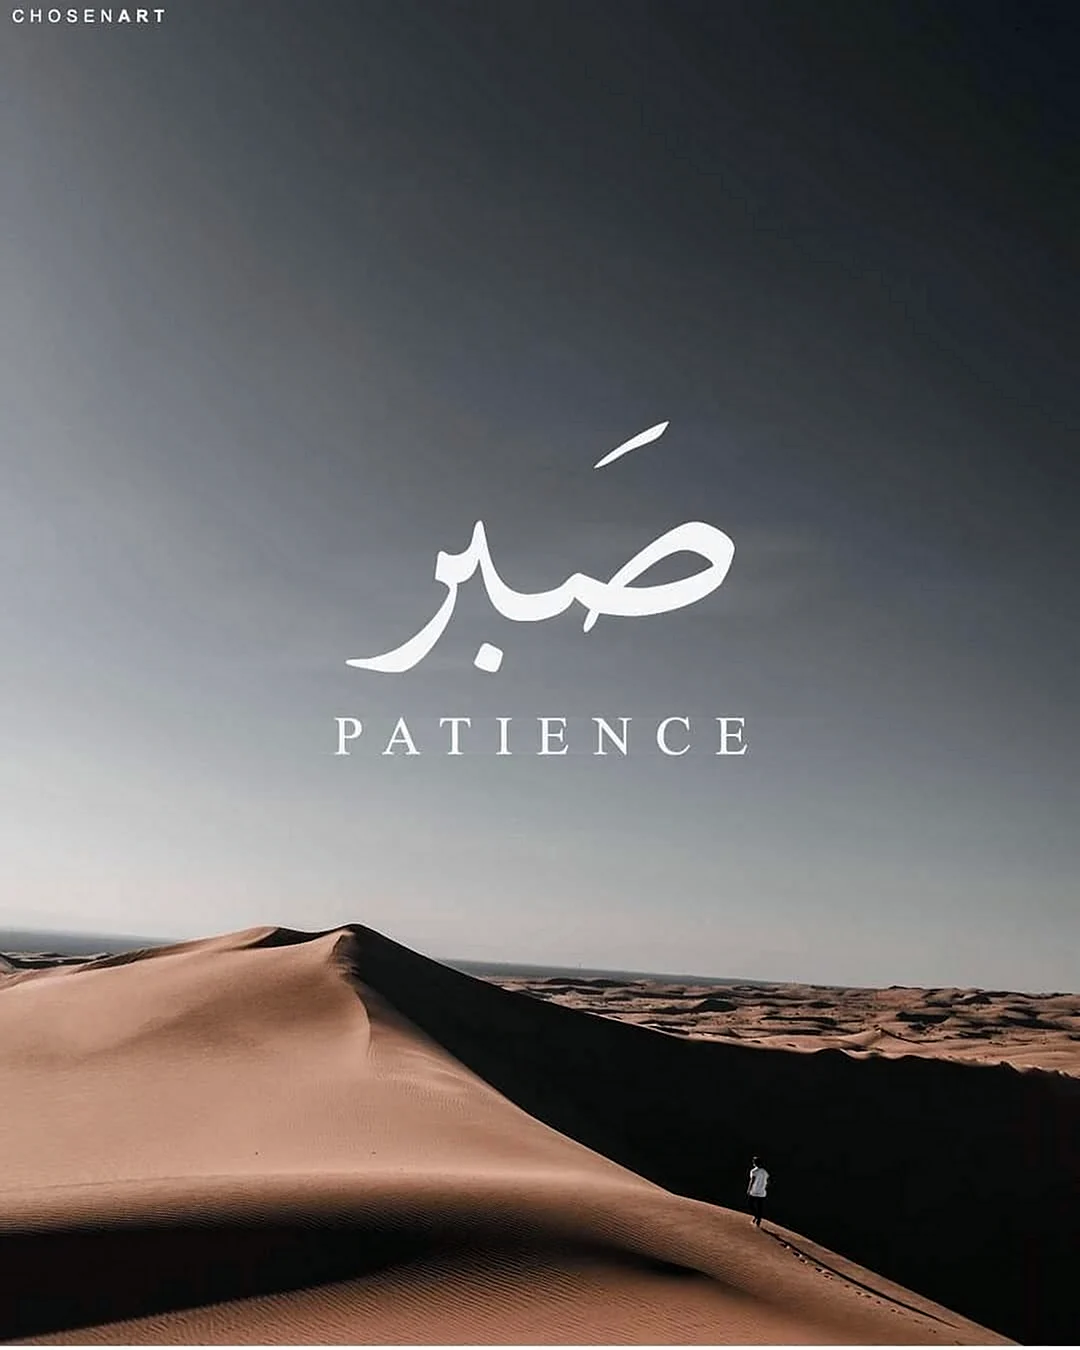 Терпение на арабском